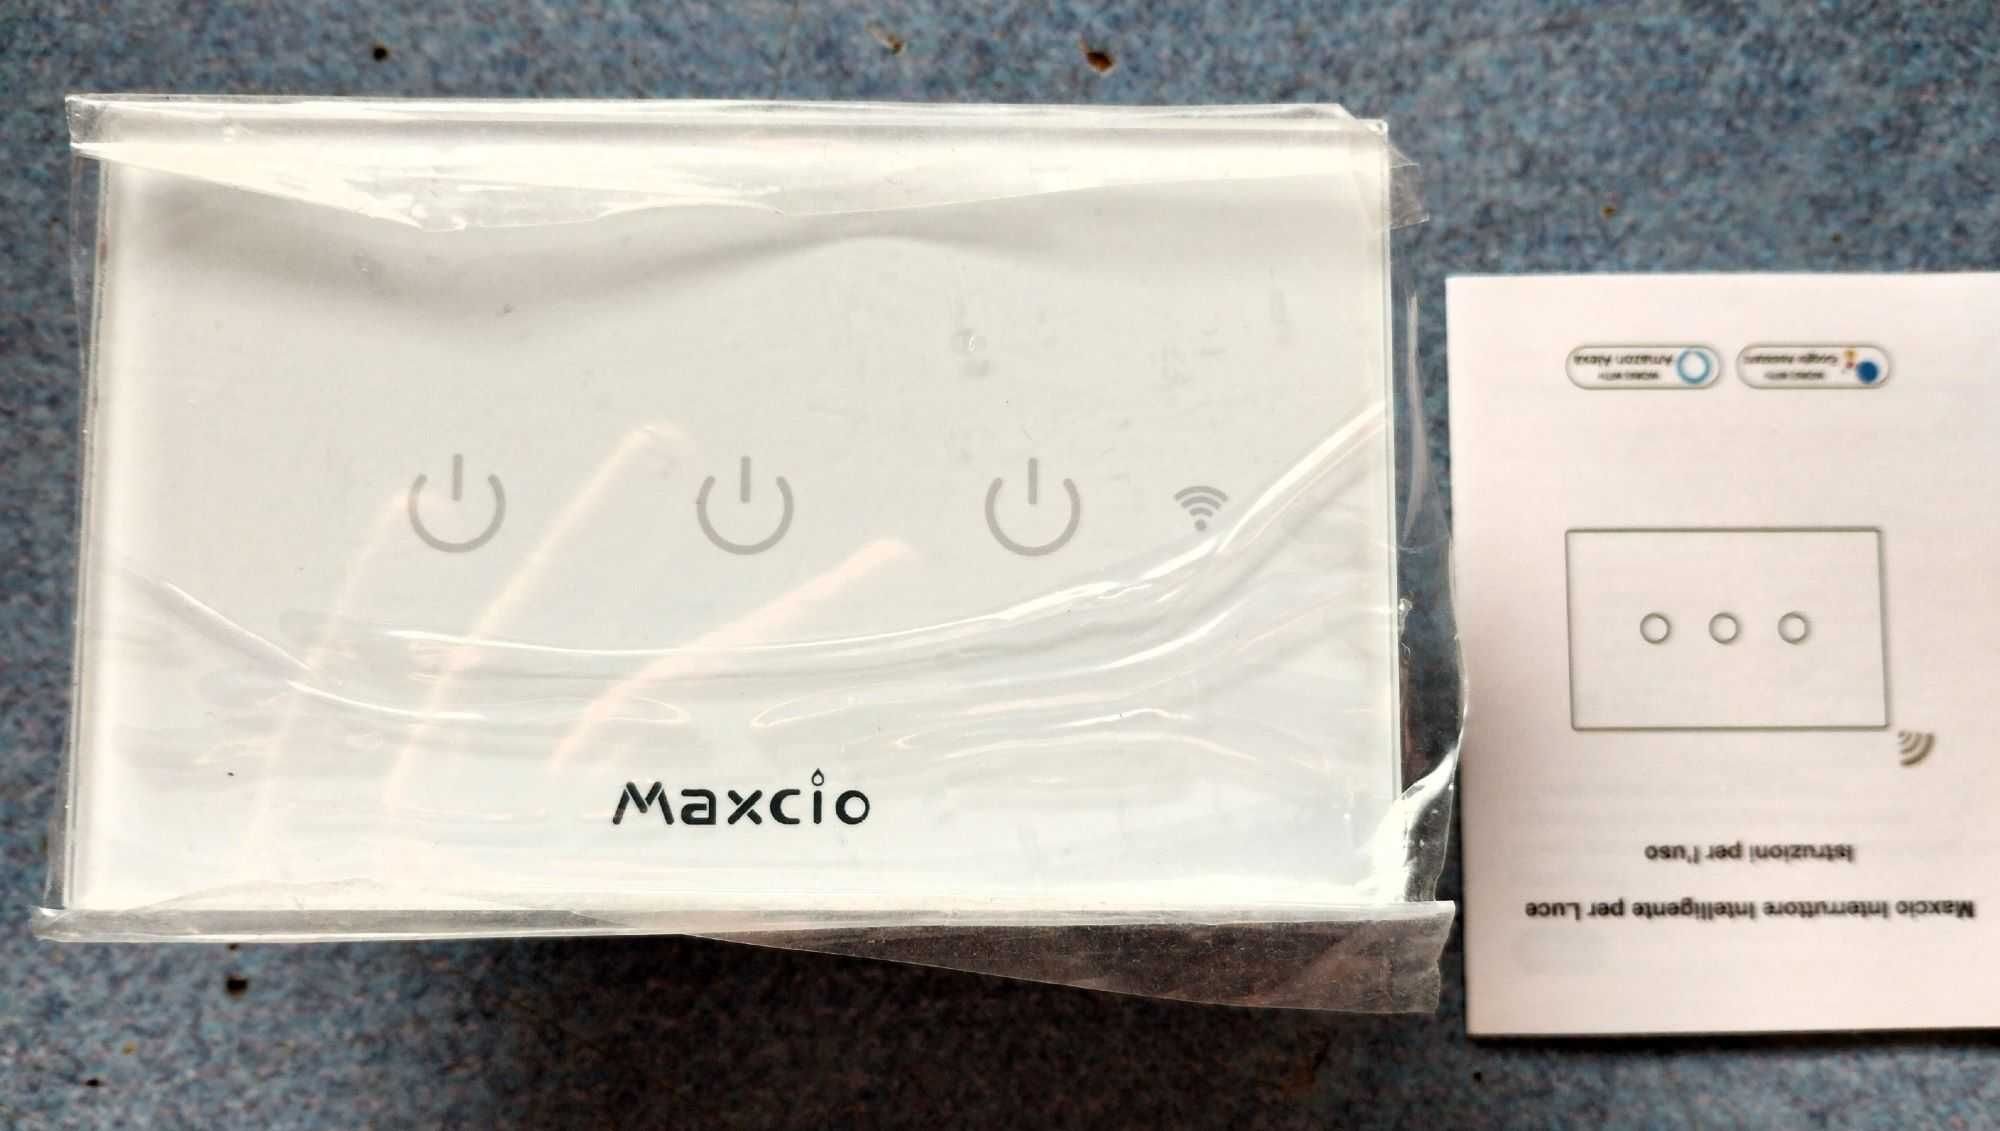 Przełącznik ścienny WIFI Maxcio RMT003 potrójny, sterowanie głosem.